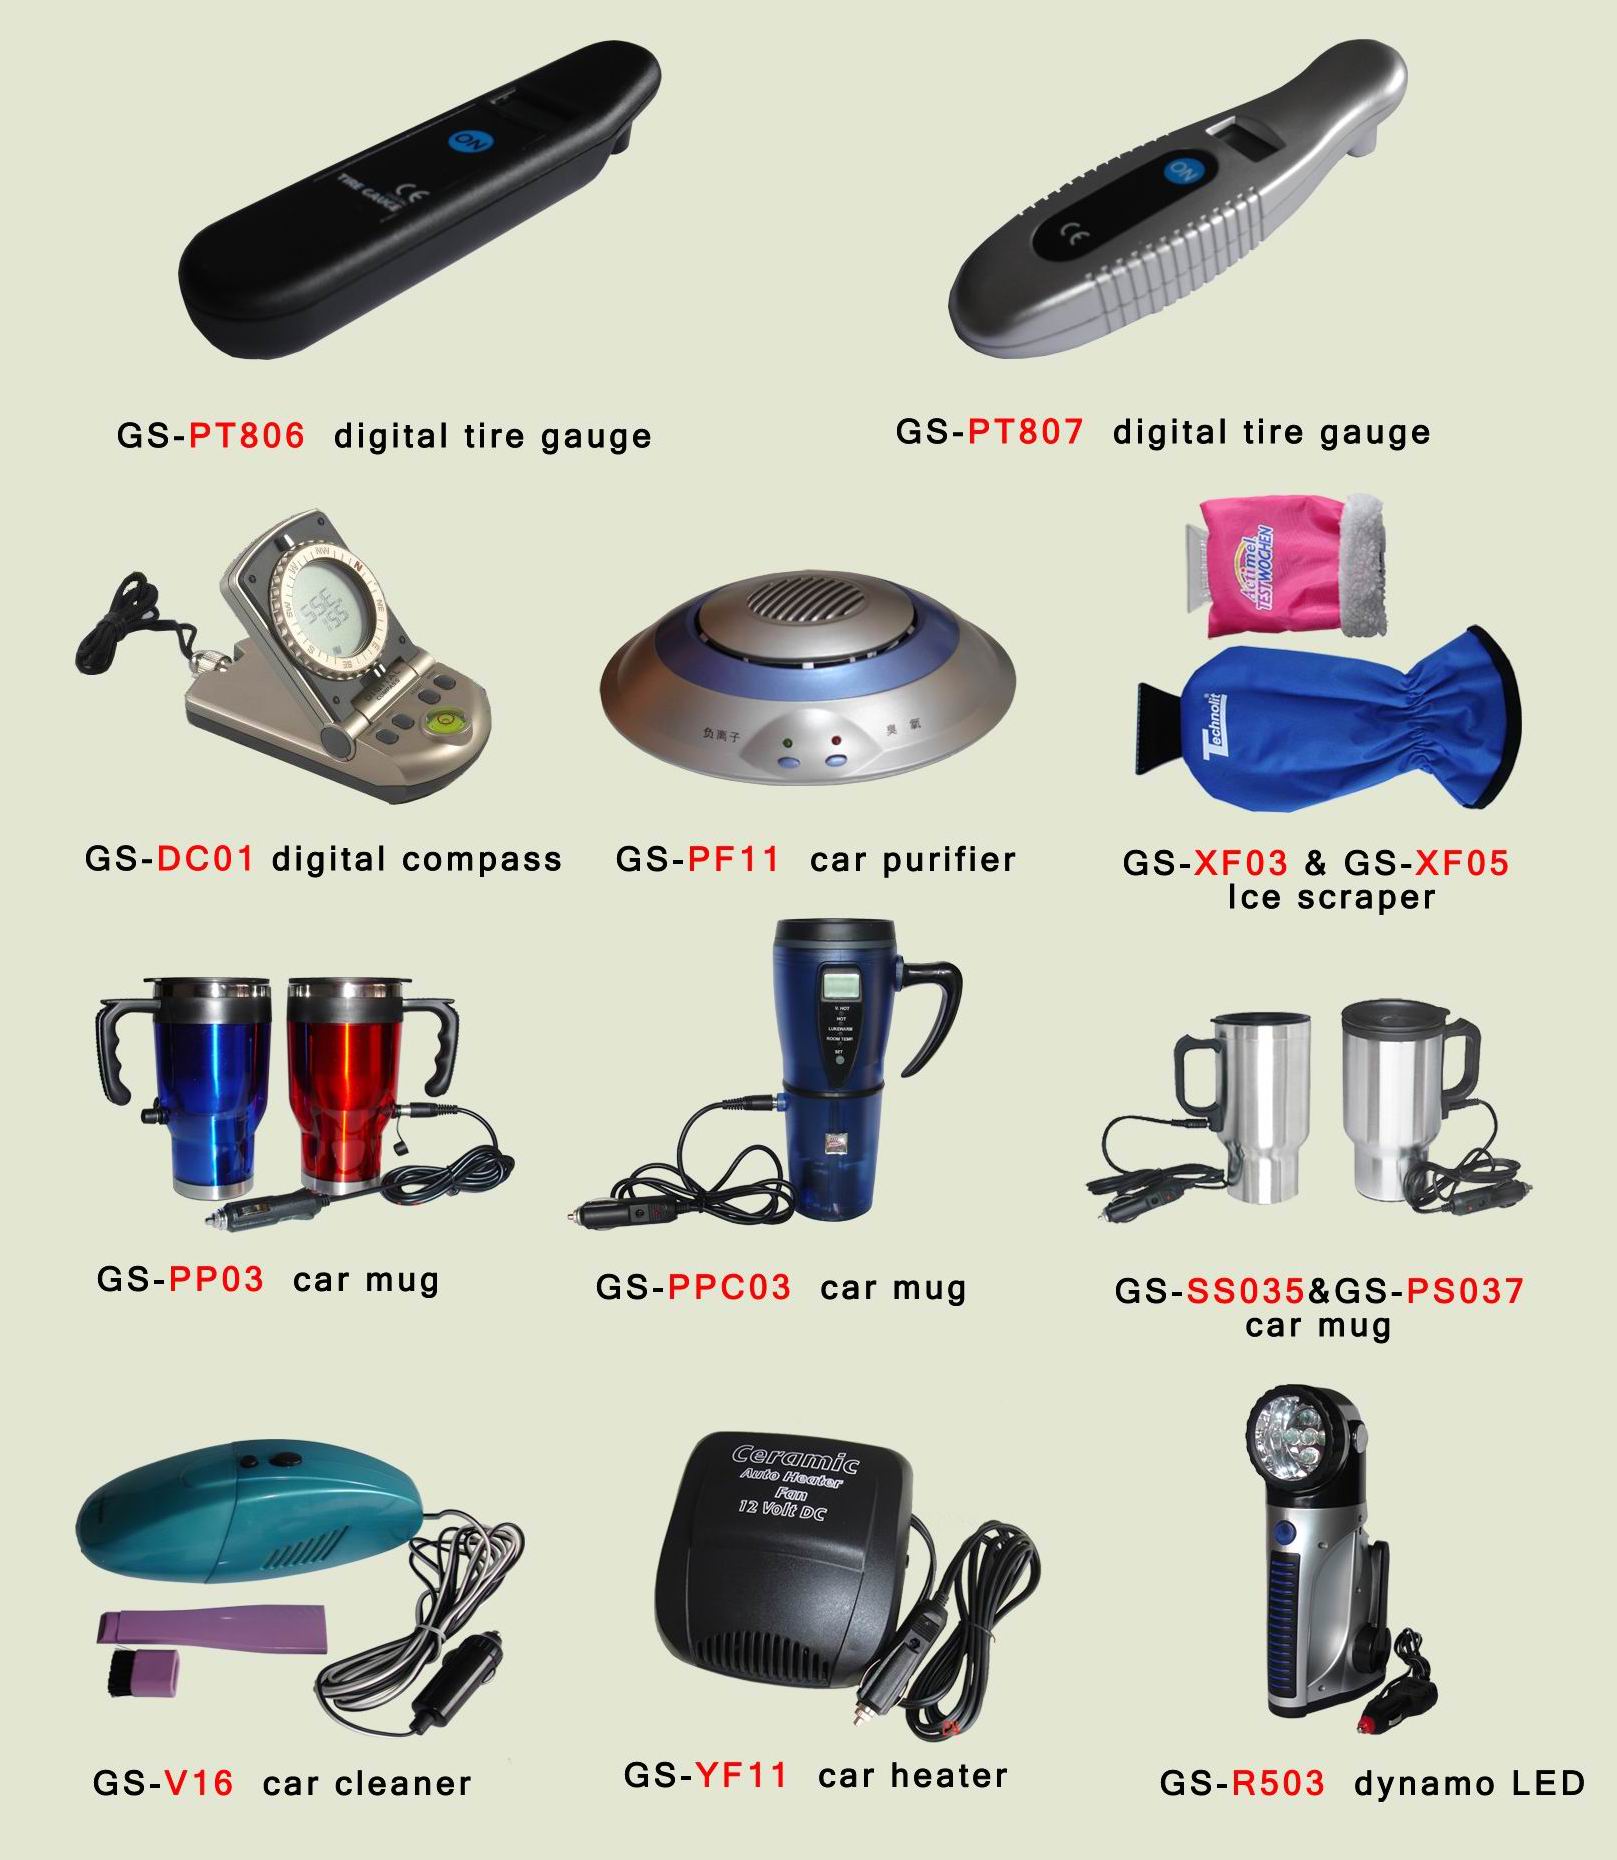 12V products ( dynamo flashlight,car heater , car mug )